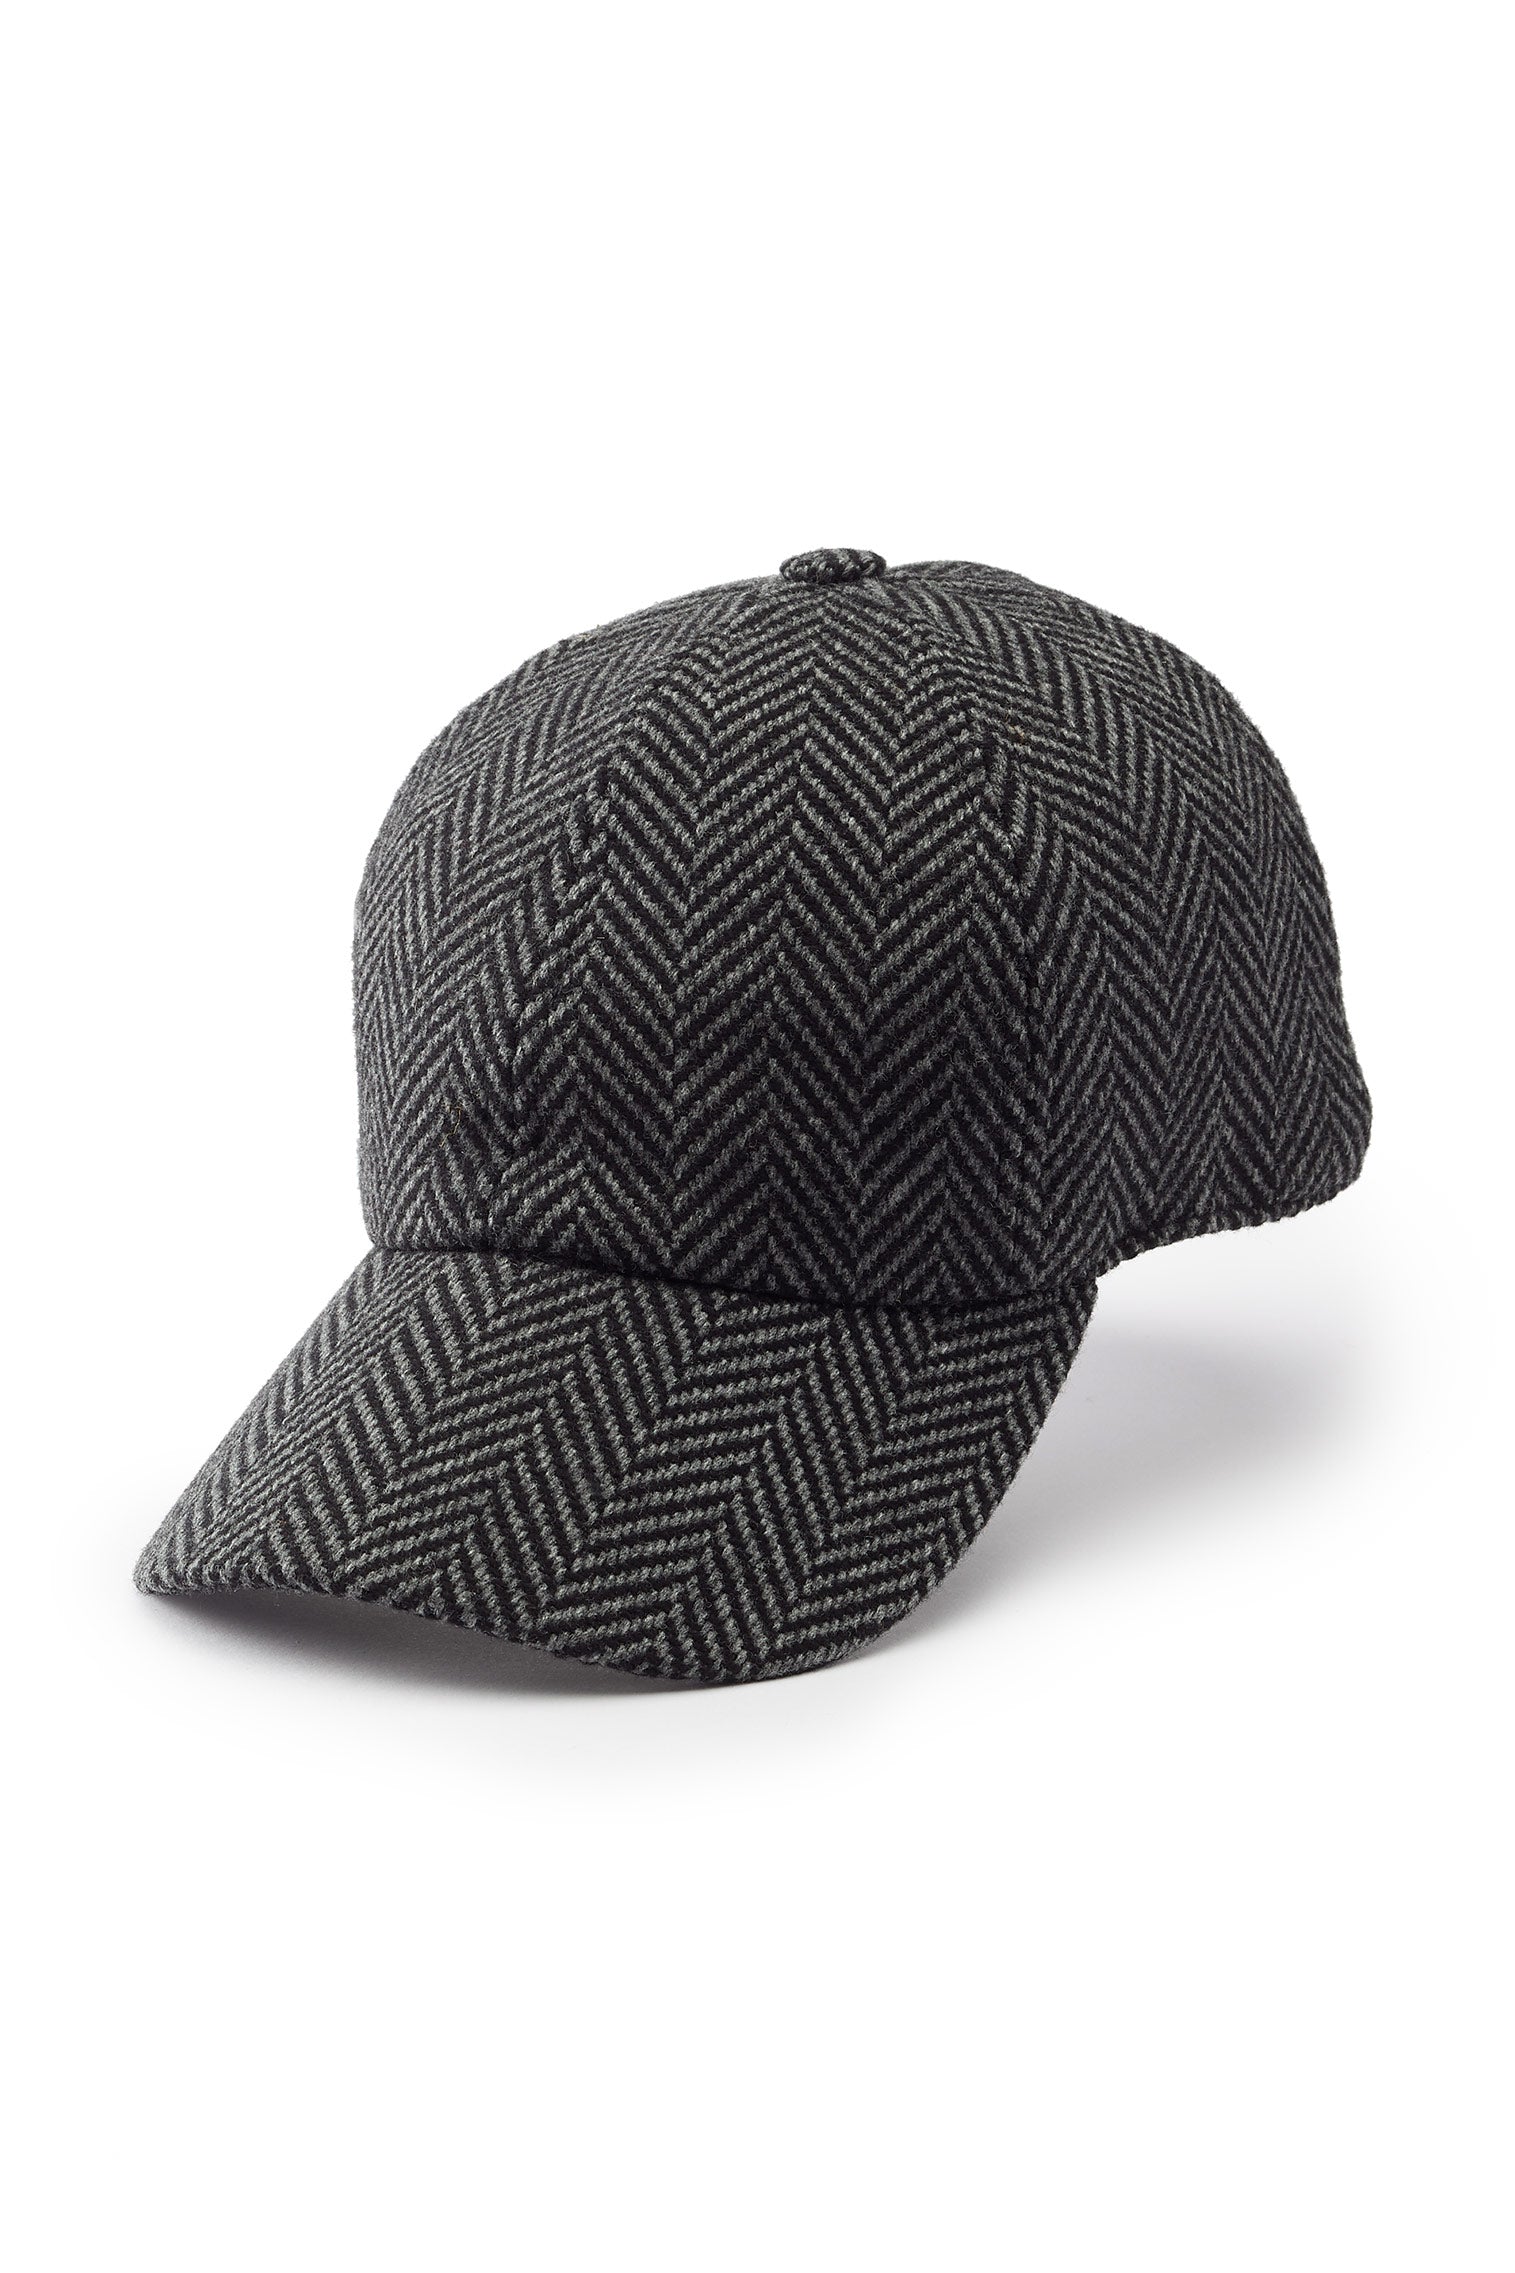 Escorial Wool Baseball Cap - Baseball Caps - Lock & Co. Hatters London UK